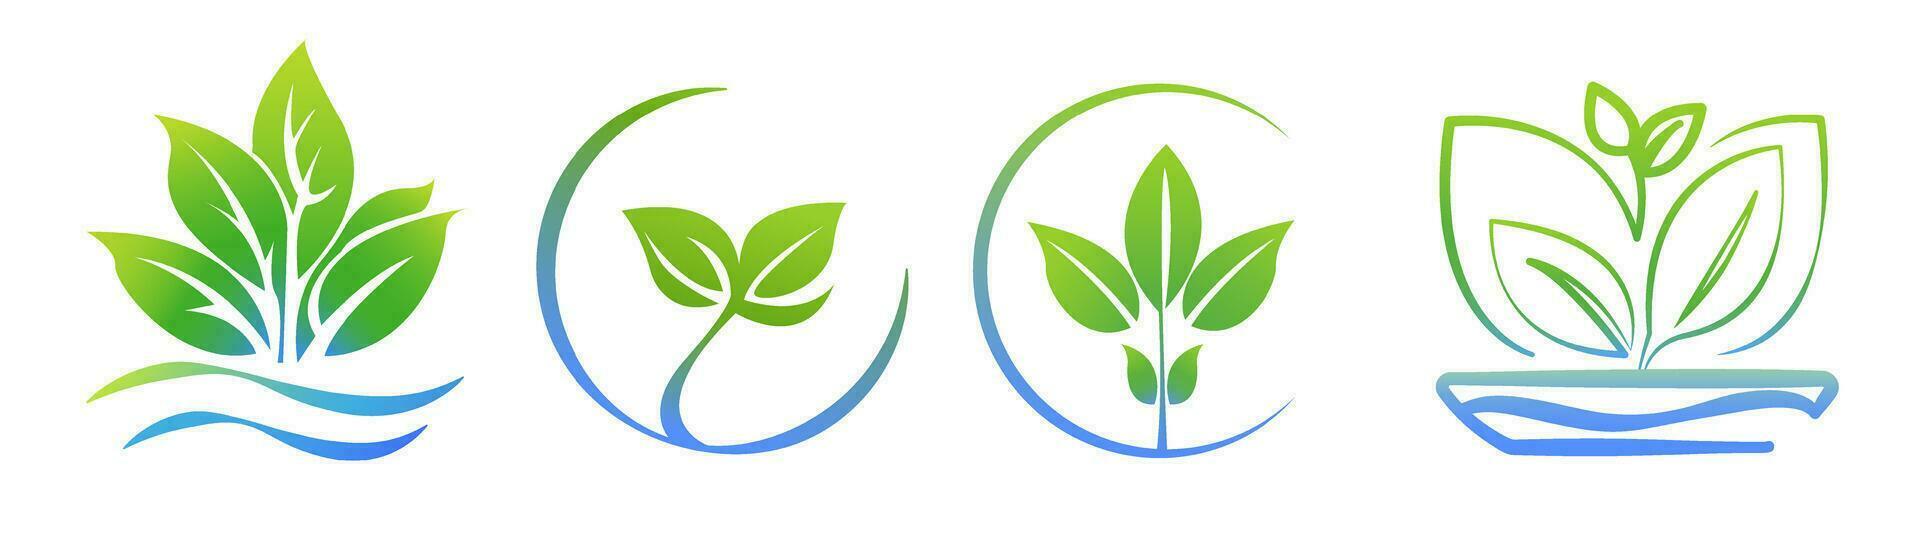 idroponica aeroponico logo modello impostato 4 nel 1, Salute cibo icona, biologico verdura giardino. eco-friendly in crescita. foglie, foglia logo. vettore illustrazione